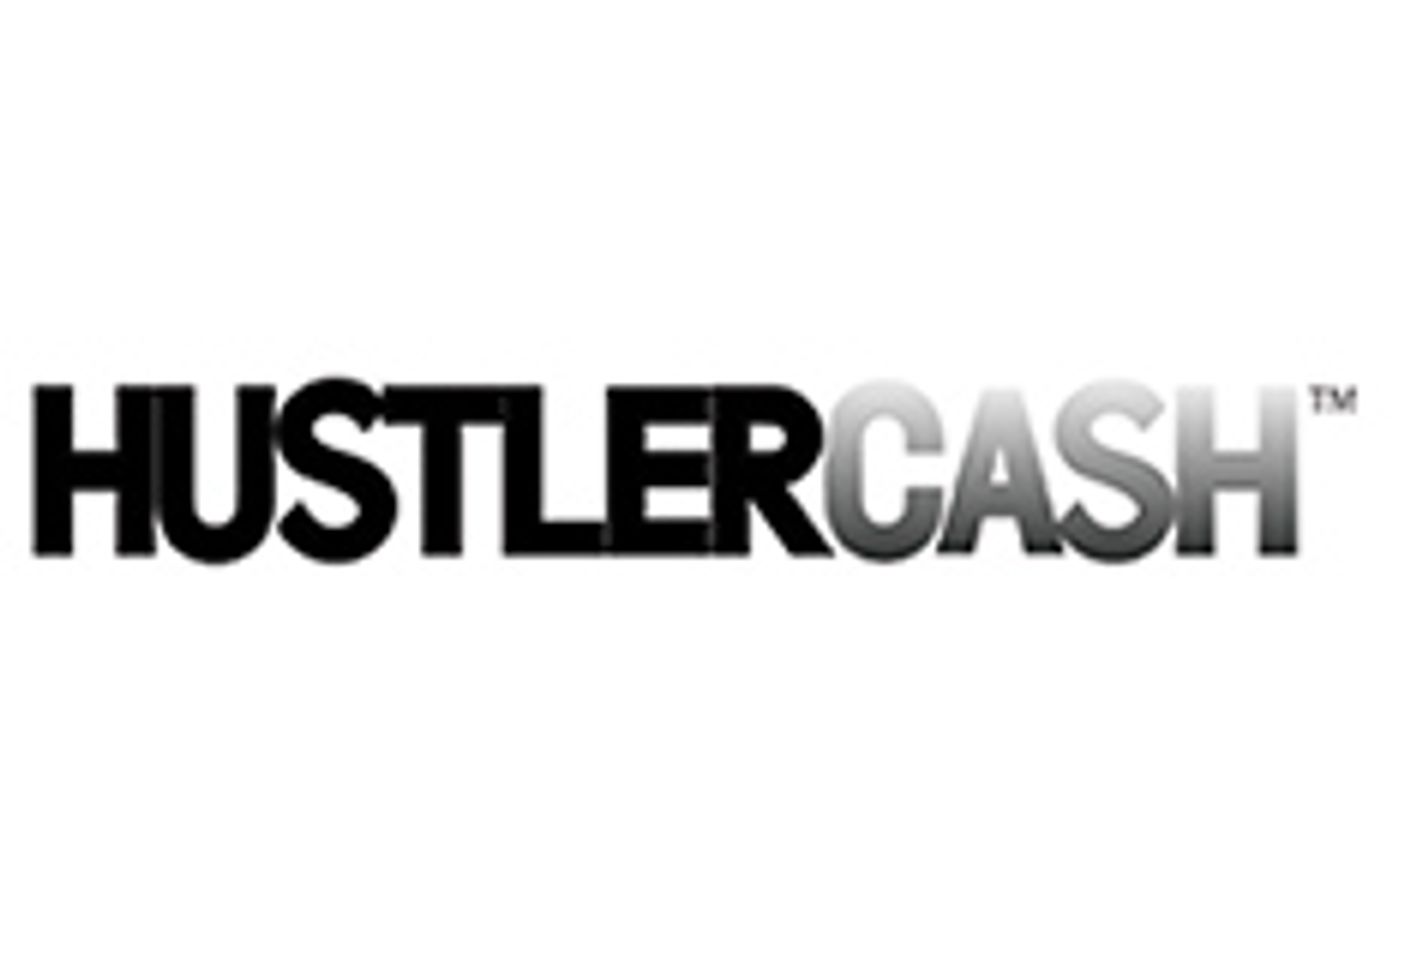 Hustler Girls Desktop Stripper now part of HustlerCash Program